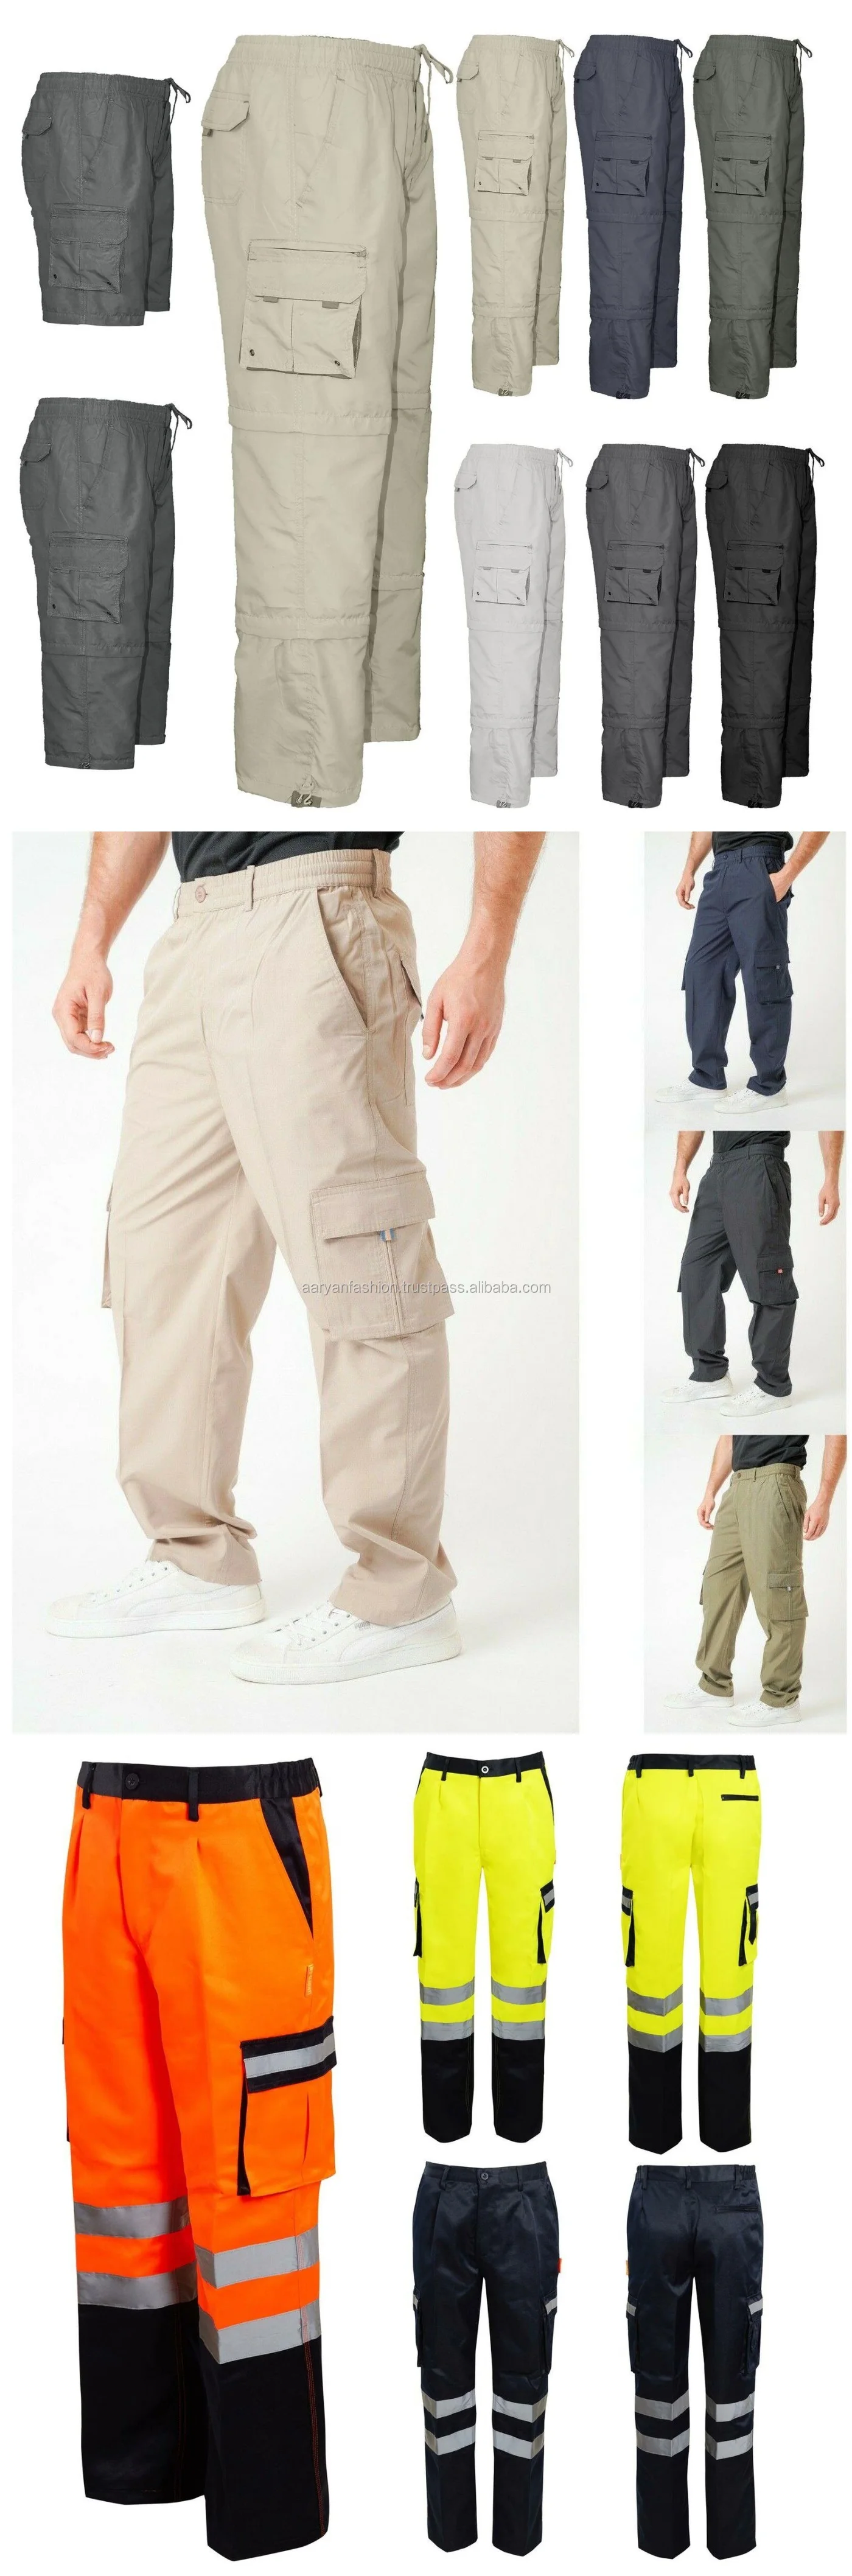 时尚男士户外长裤长裤休闲长款货裤有很多口袋在孟加拉制作- Buy 时尚